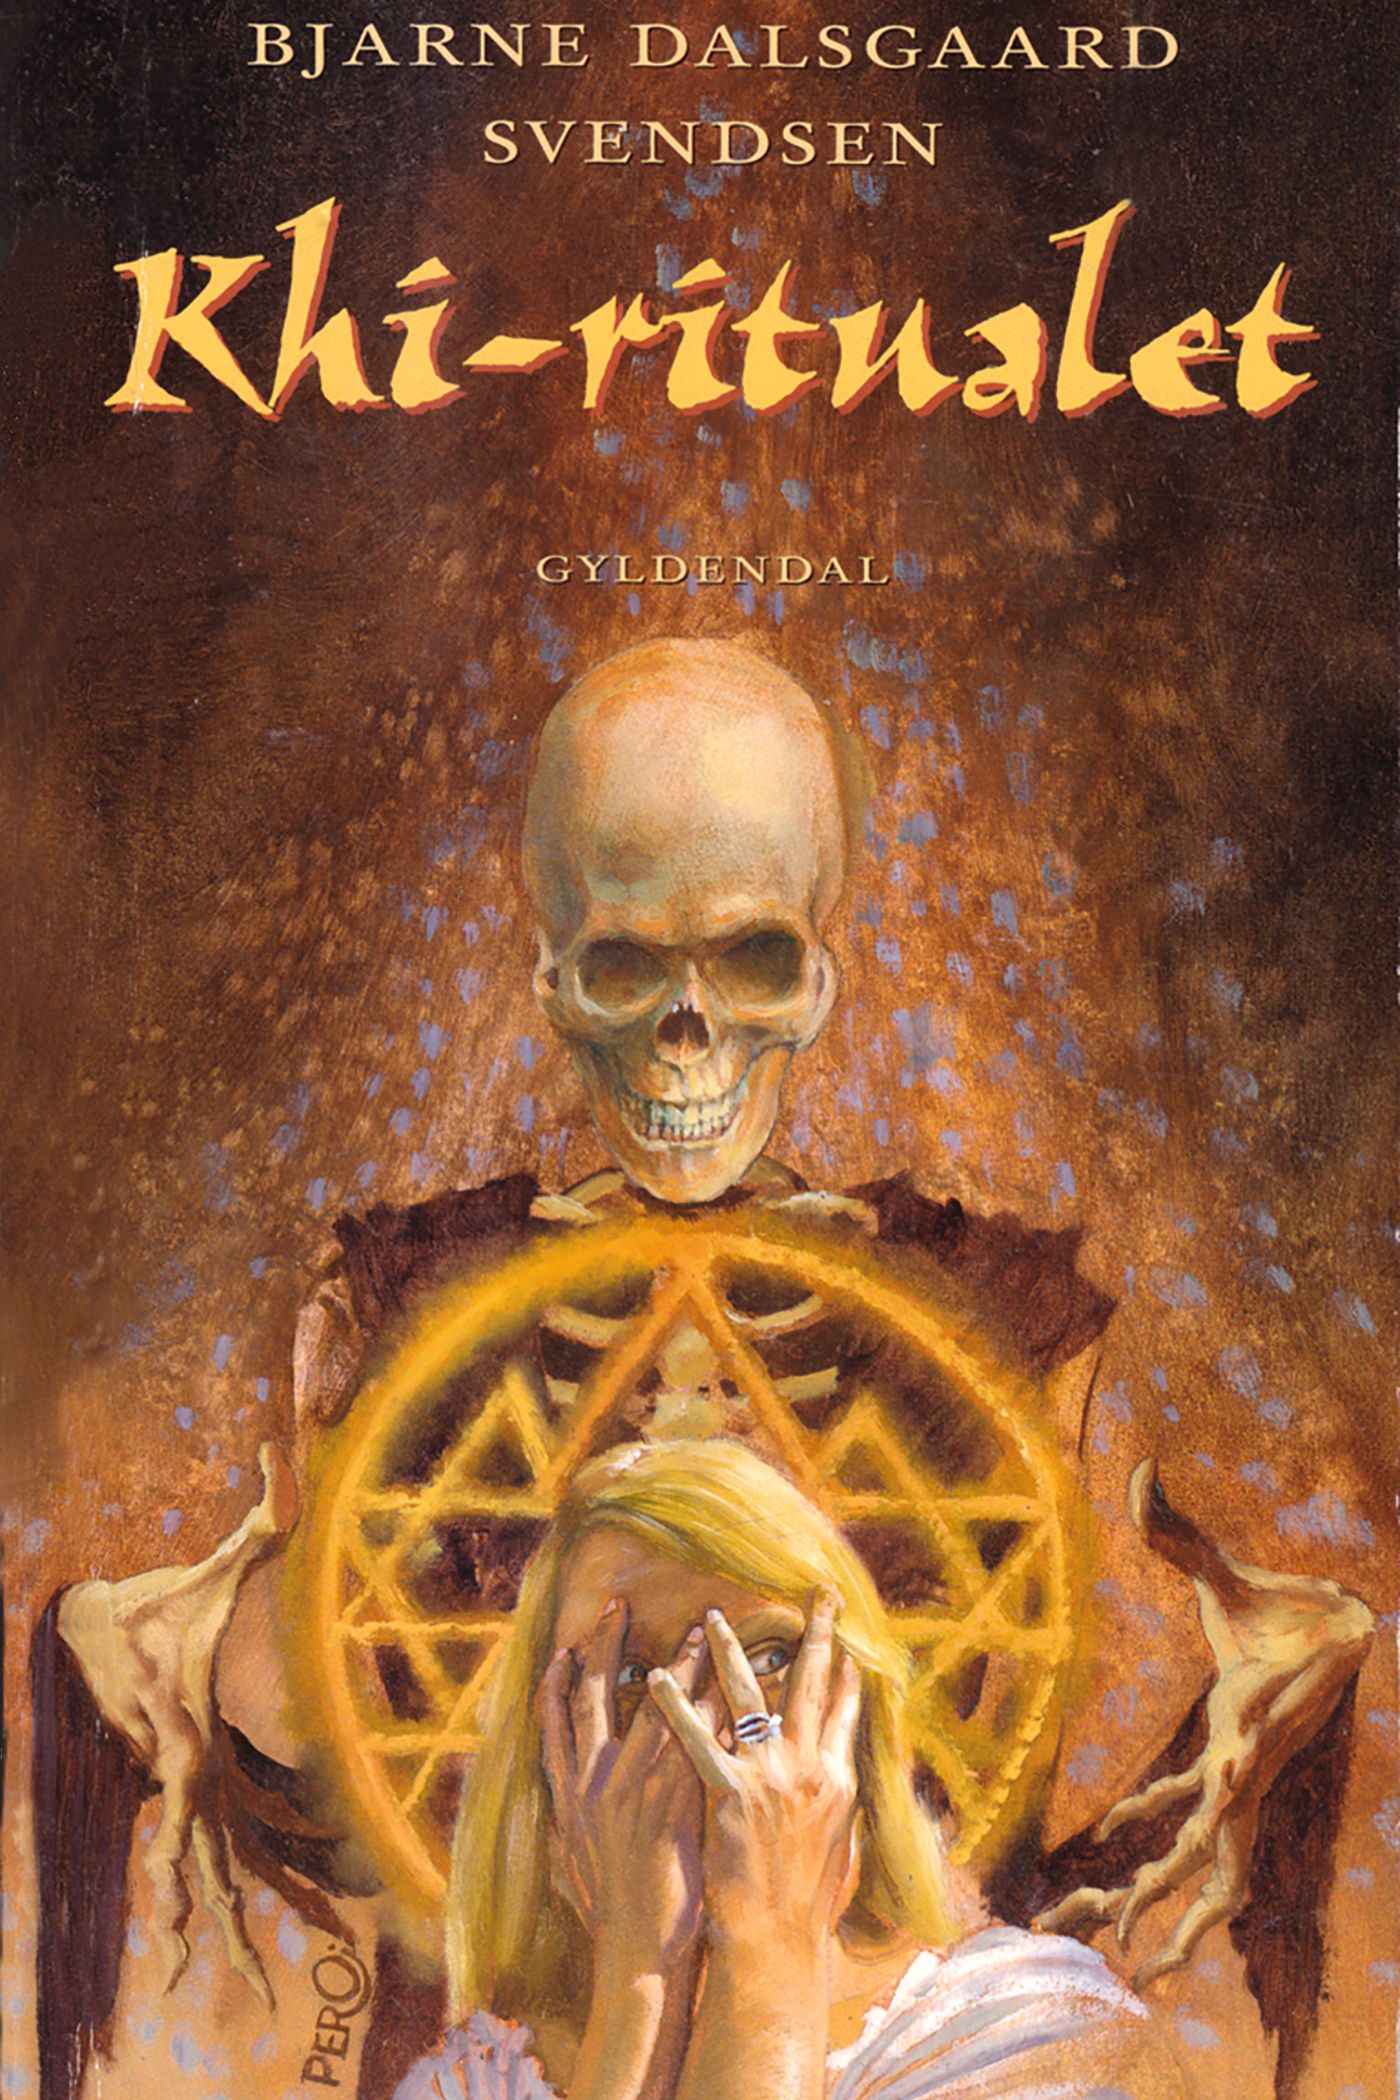 Khi-ritualet, e-bok av Bjarne Dalsgaard Svendsen